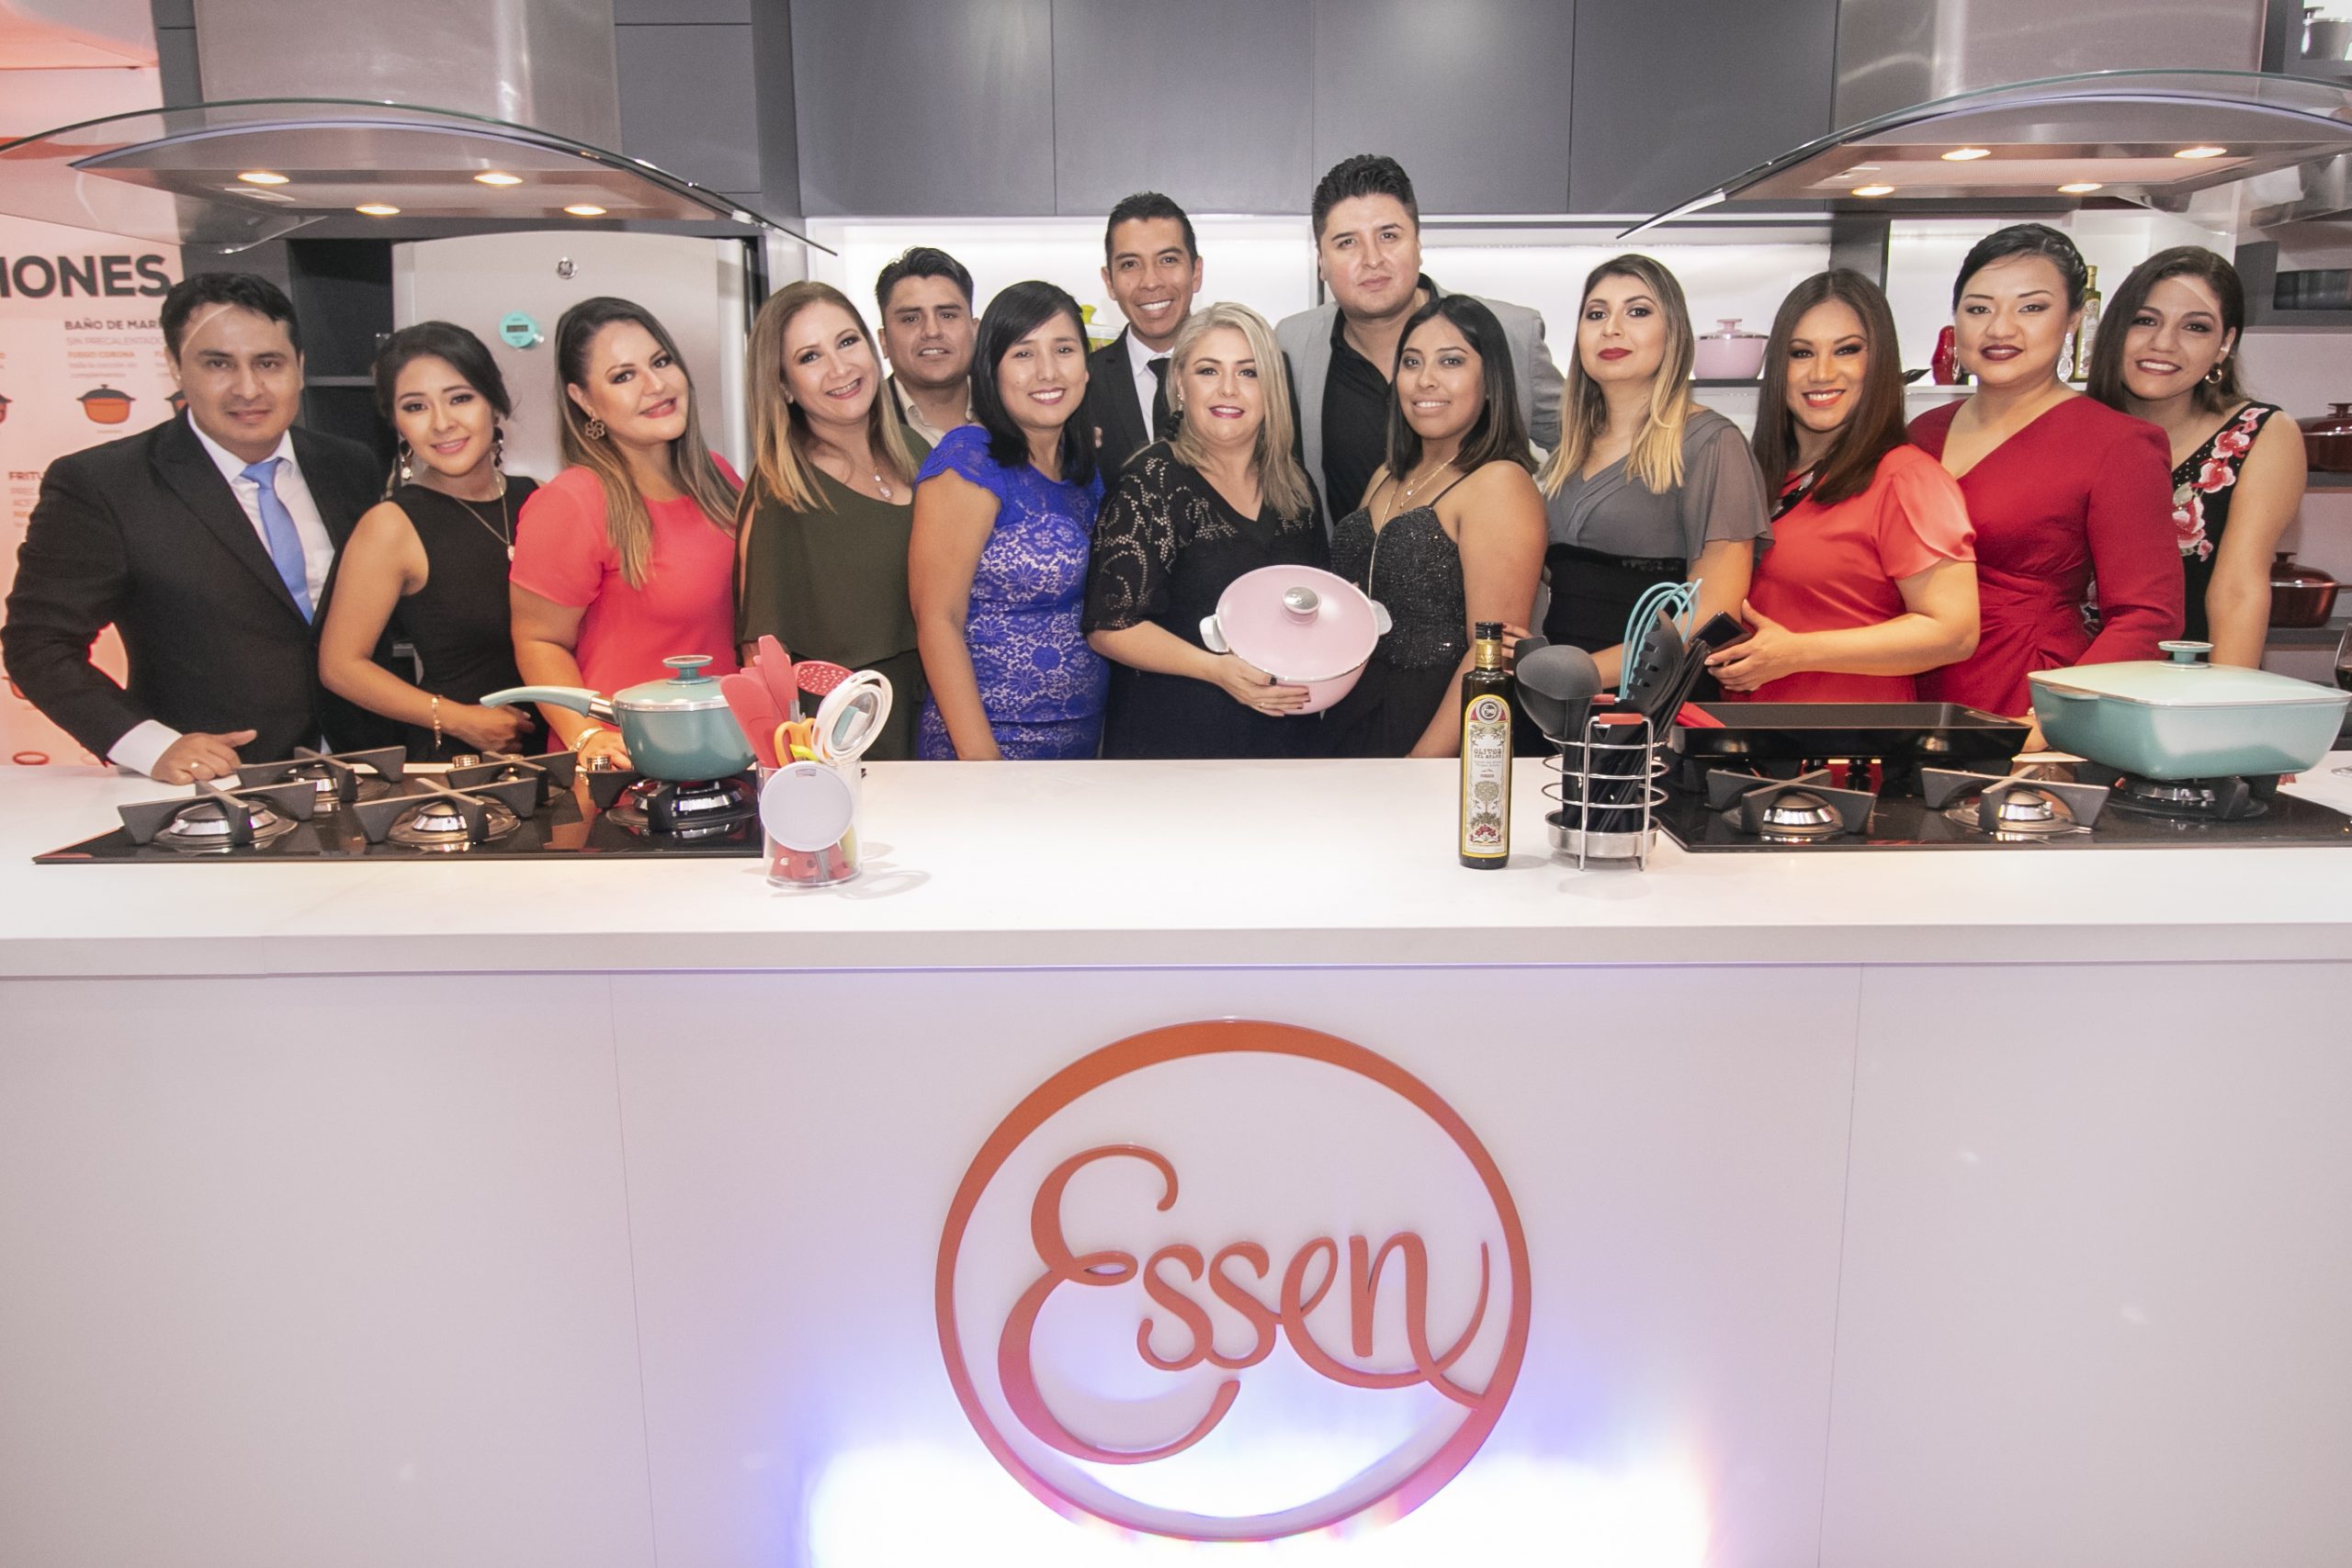 Essen, la marca argentina líder en cacerolas de alta calidad, se abre paso en los hogares bolivianos